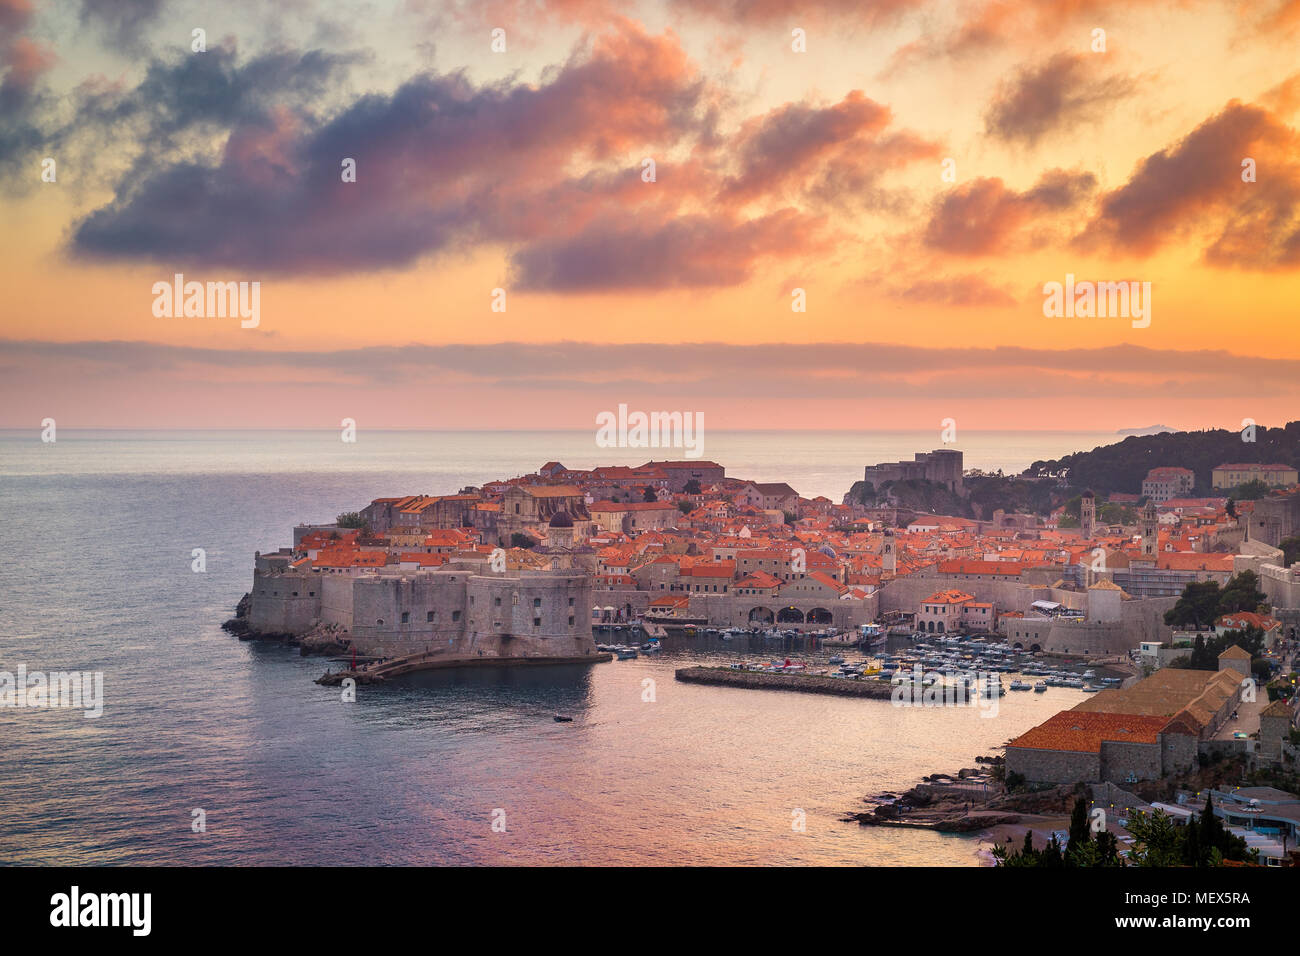 Panoramablick auf das luftbild der Altstadt von Dubrovnik, eines der bekanntesten touristischen Destinationen im Mittelmeer, bei Sonnenuntergang, Kroatien Stockfoto